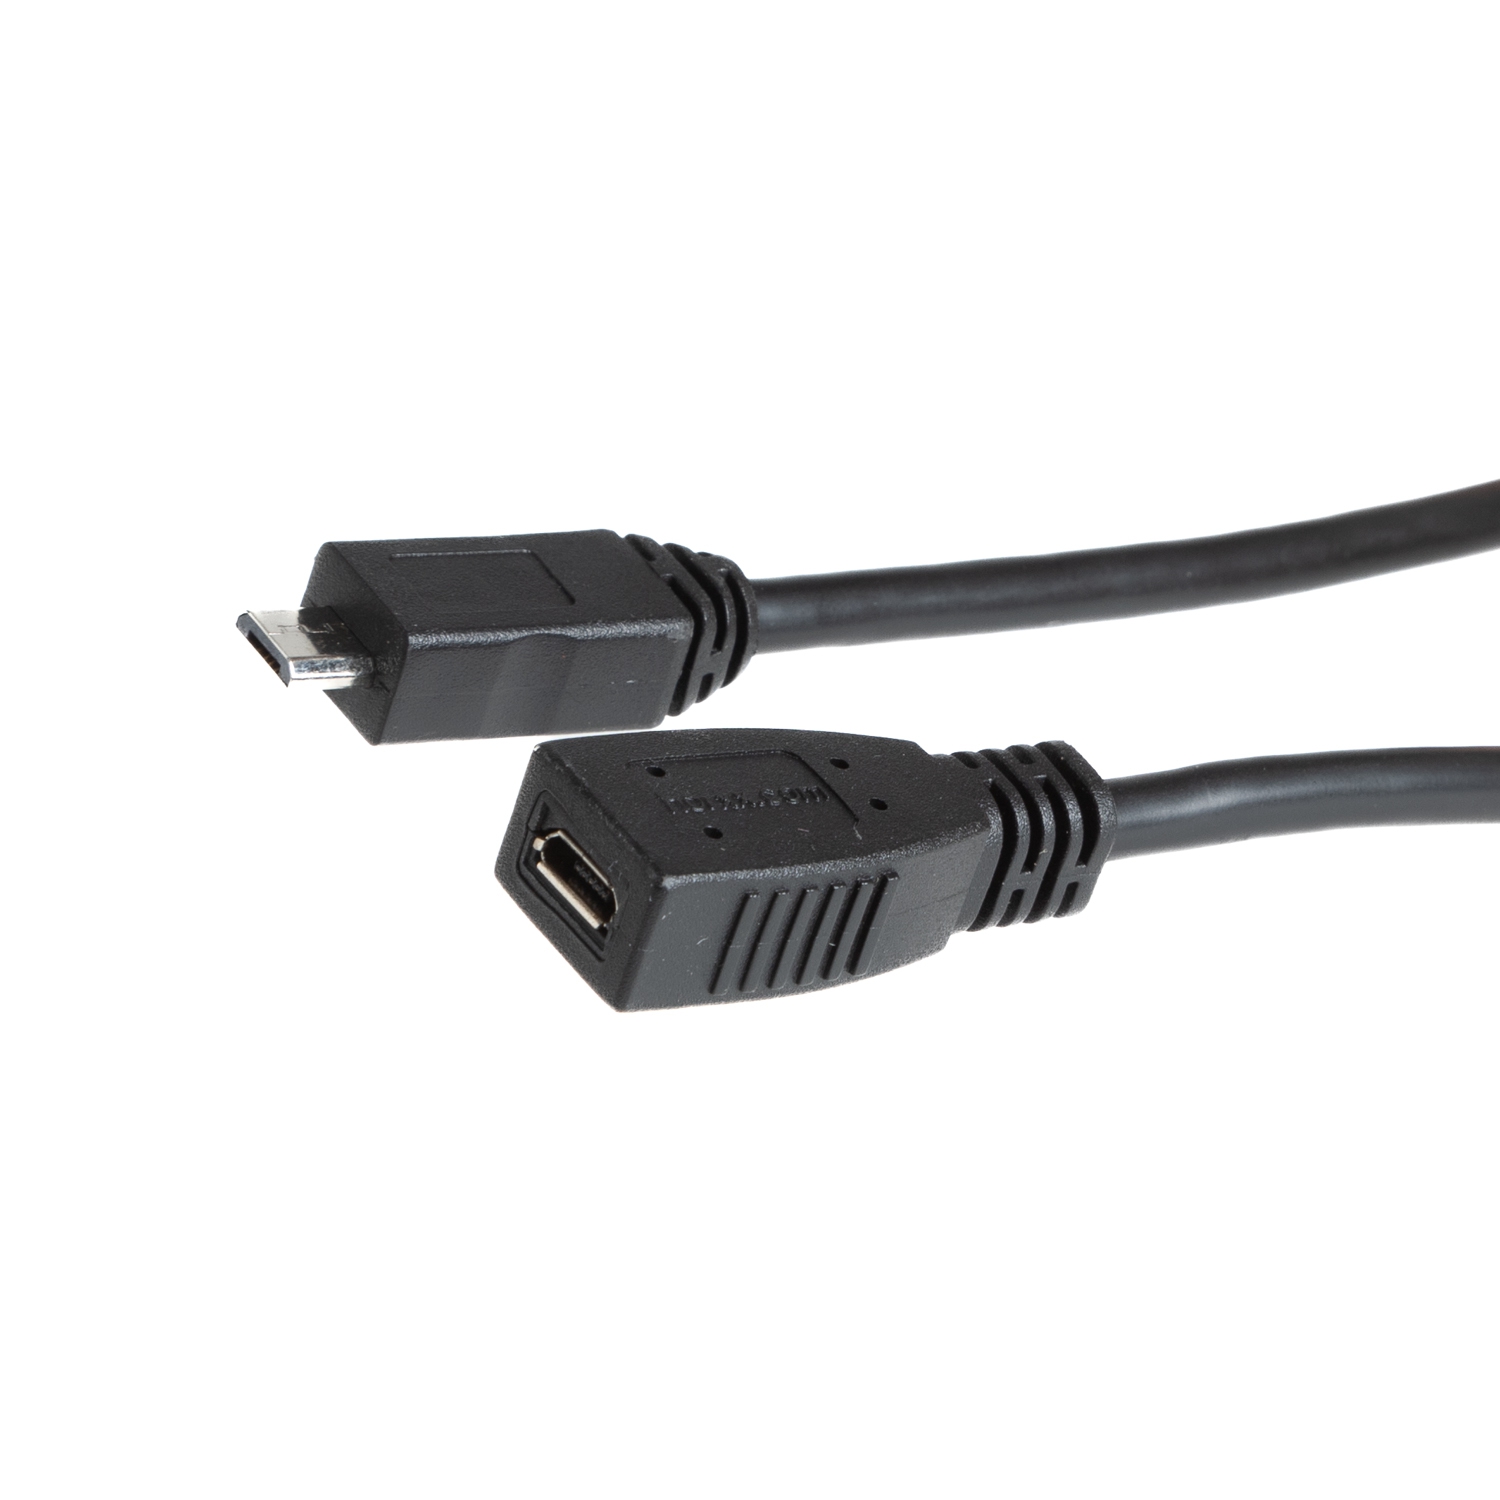 Rallonge USB 2.0 MICRO B, les 5 broches connectées 1 à 1, 1m